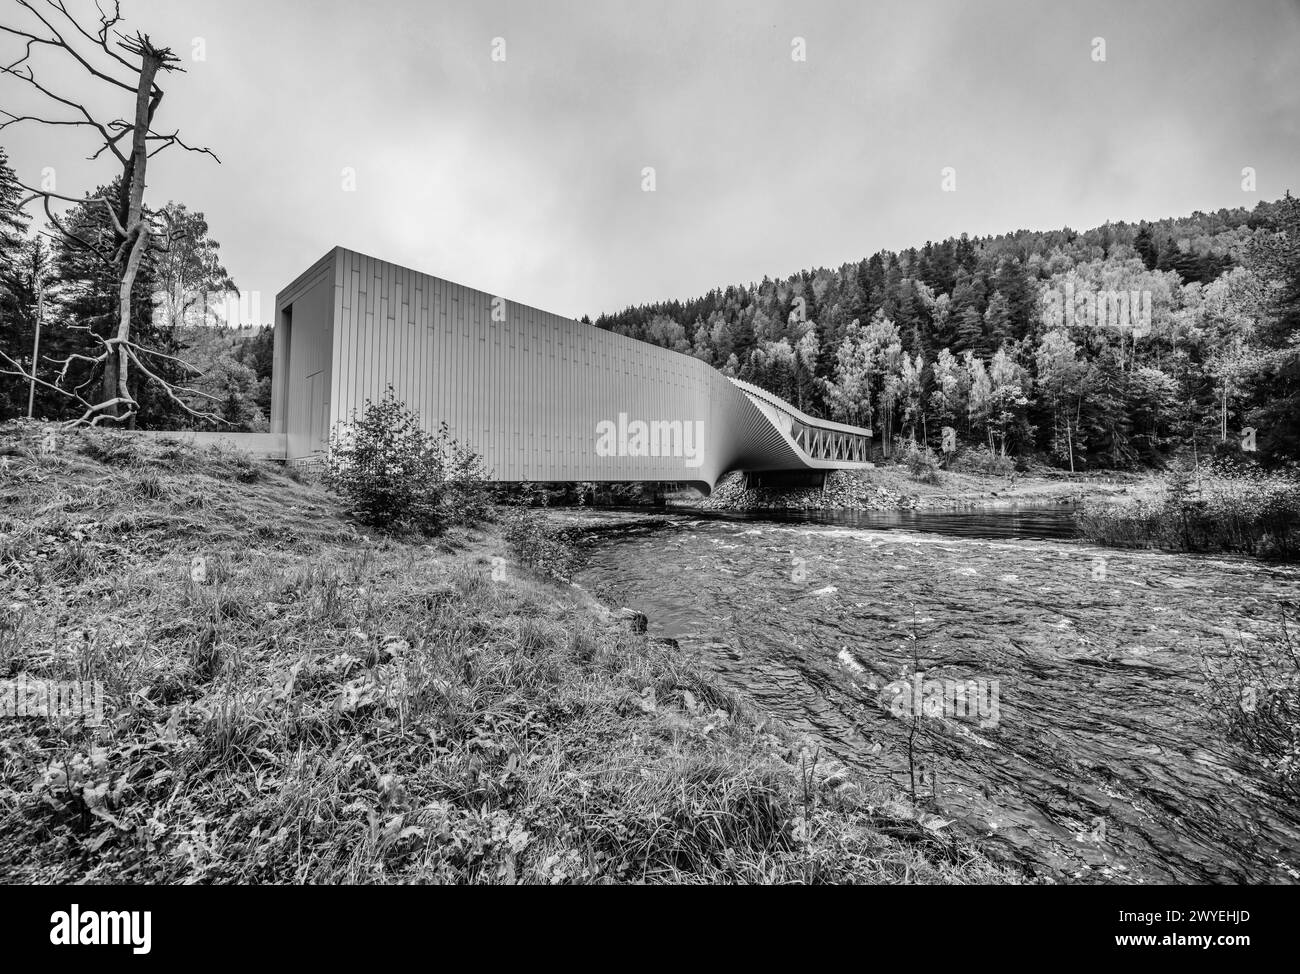 The Twist in Kistefos Industrie- und Skulpturenpark für zeitgenössische Kunst in einer Zellstofffabrik, einem Wasserkraftwerk, dem Fluss Randselva, Jevnaker, Akershus, Norwegen Stockfoto